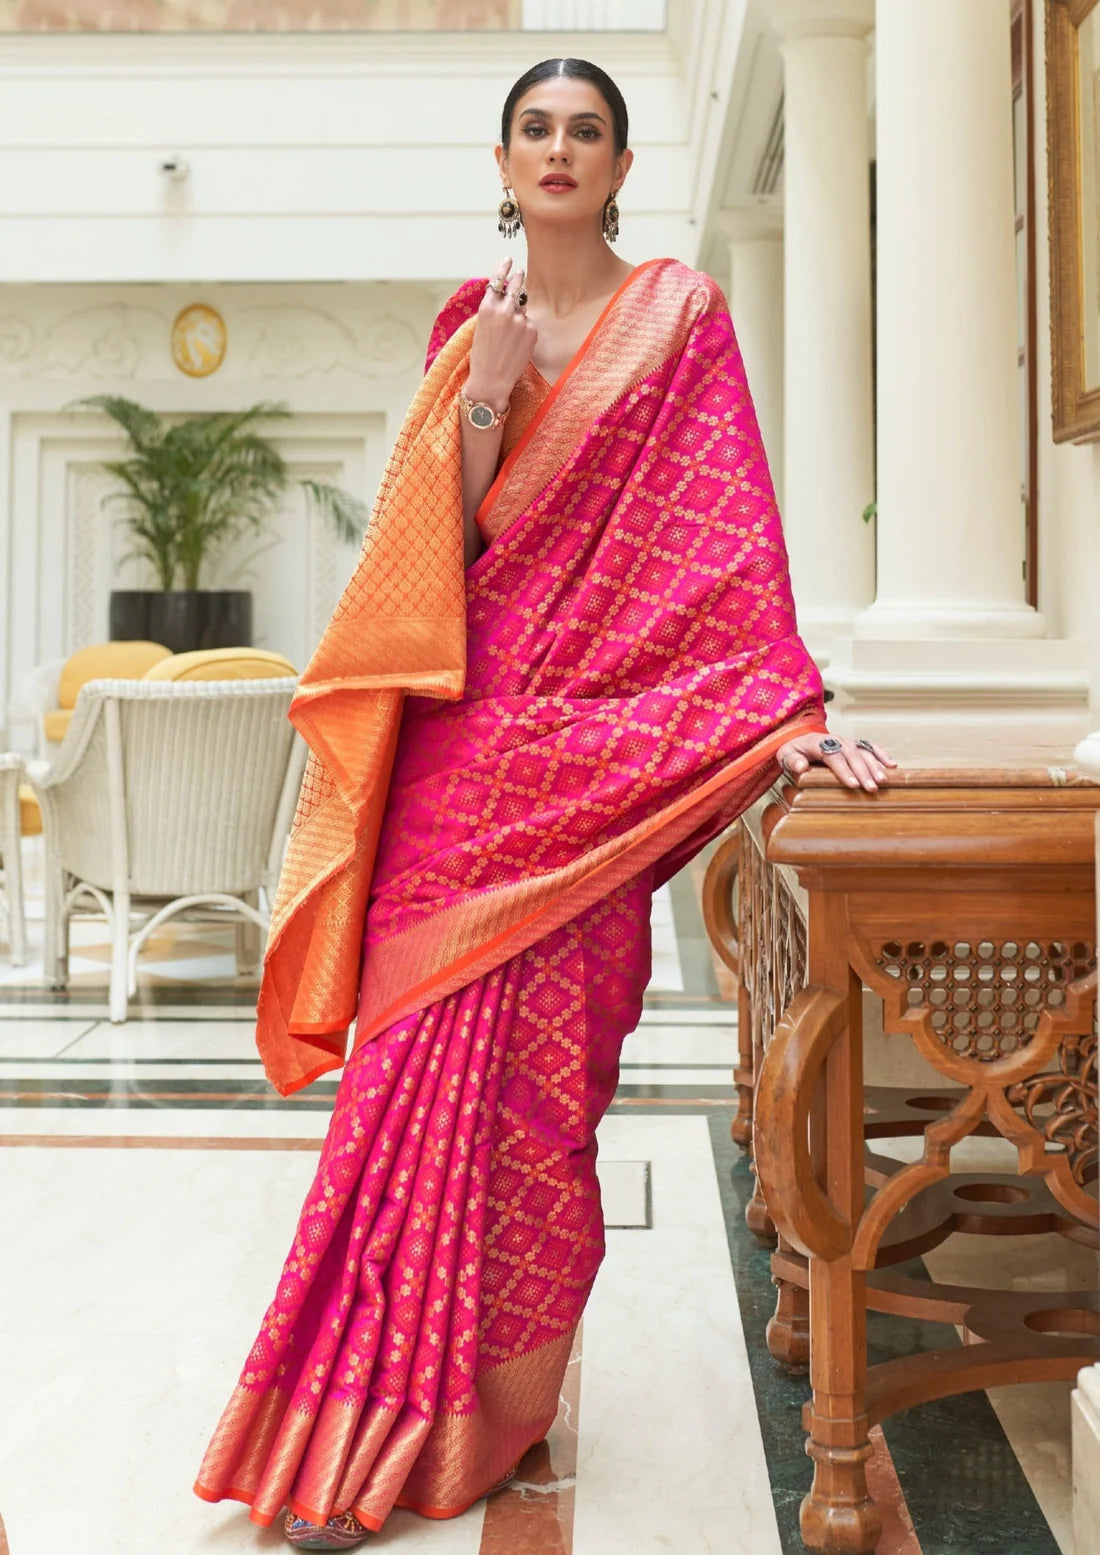 Banarasi silk hot pink bandhani saree design online shopping india.